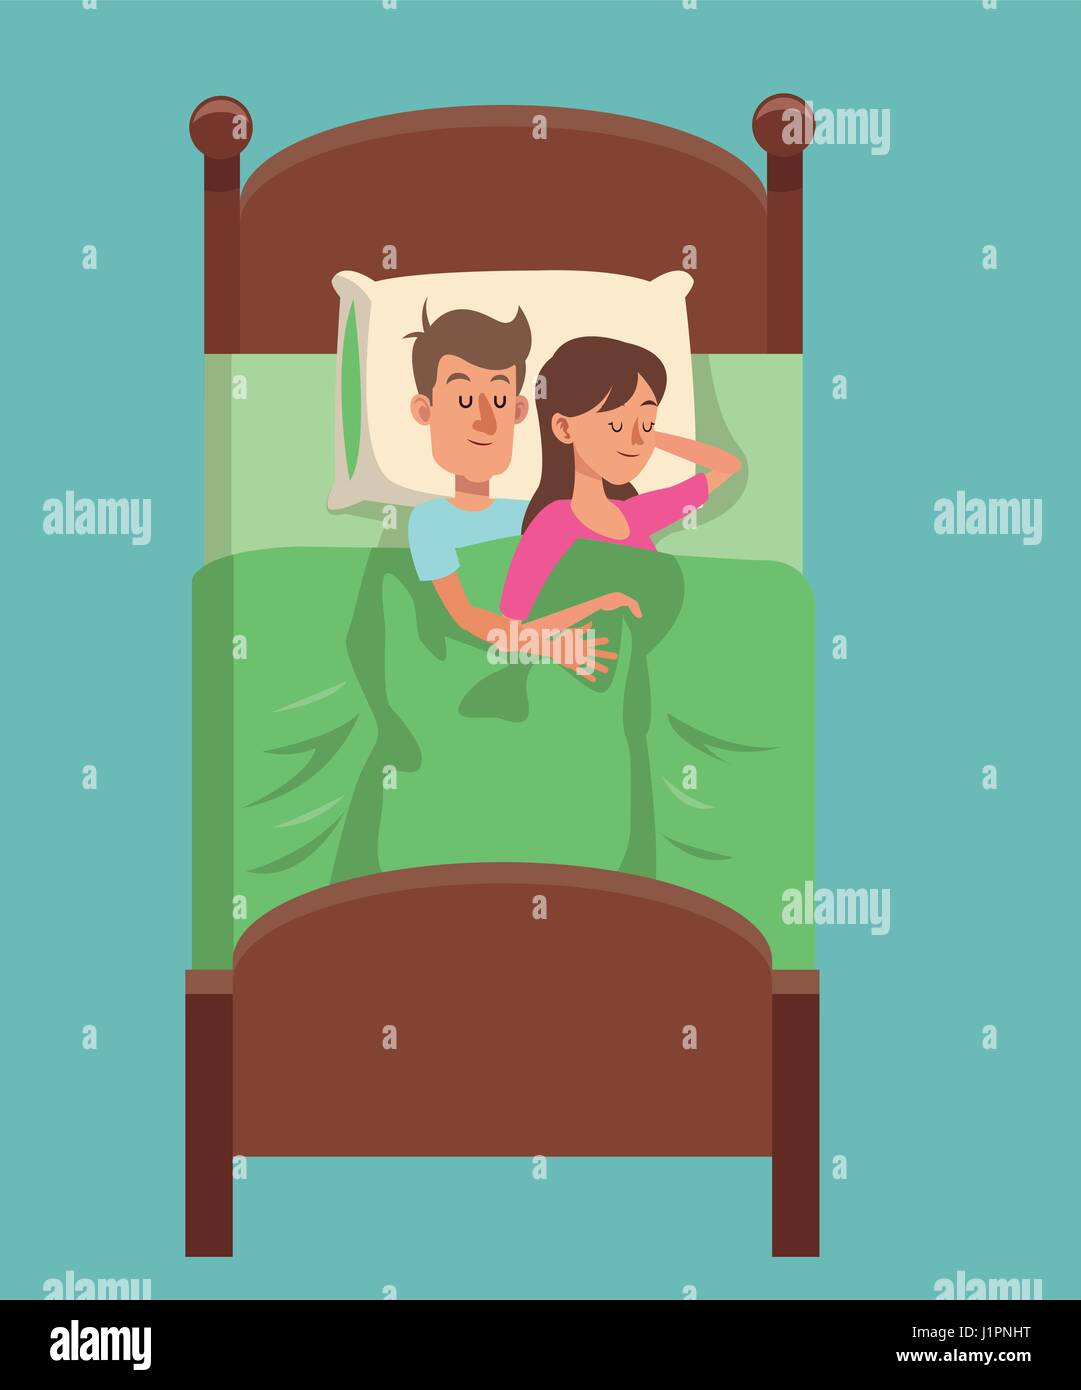 couple sleep with pillow man hug woman Stock Vector Image & Art - Alamy